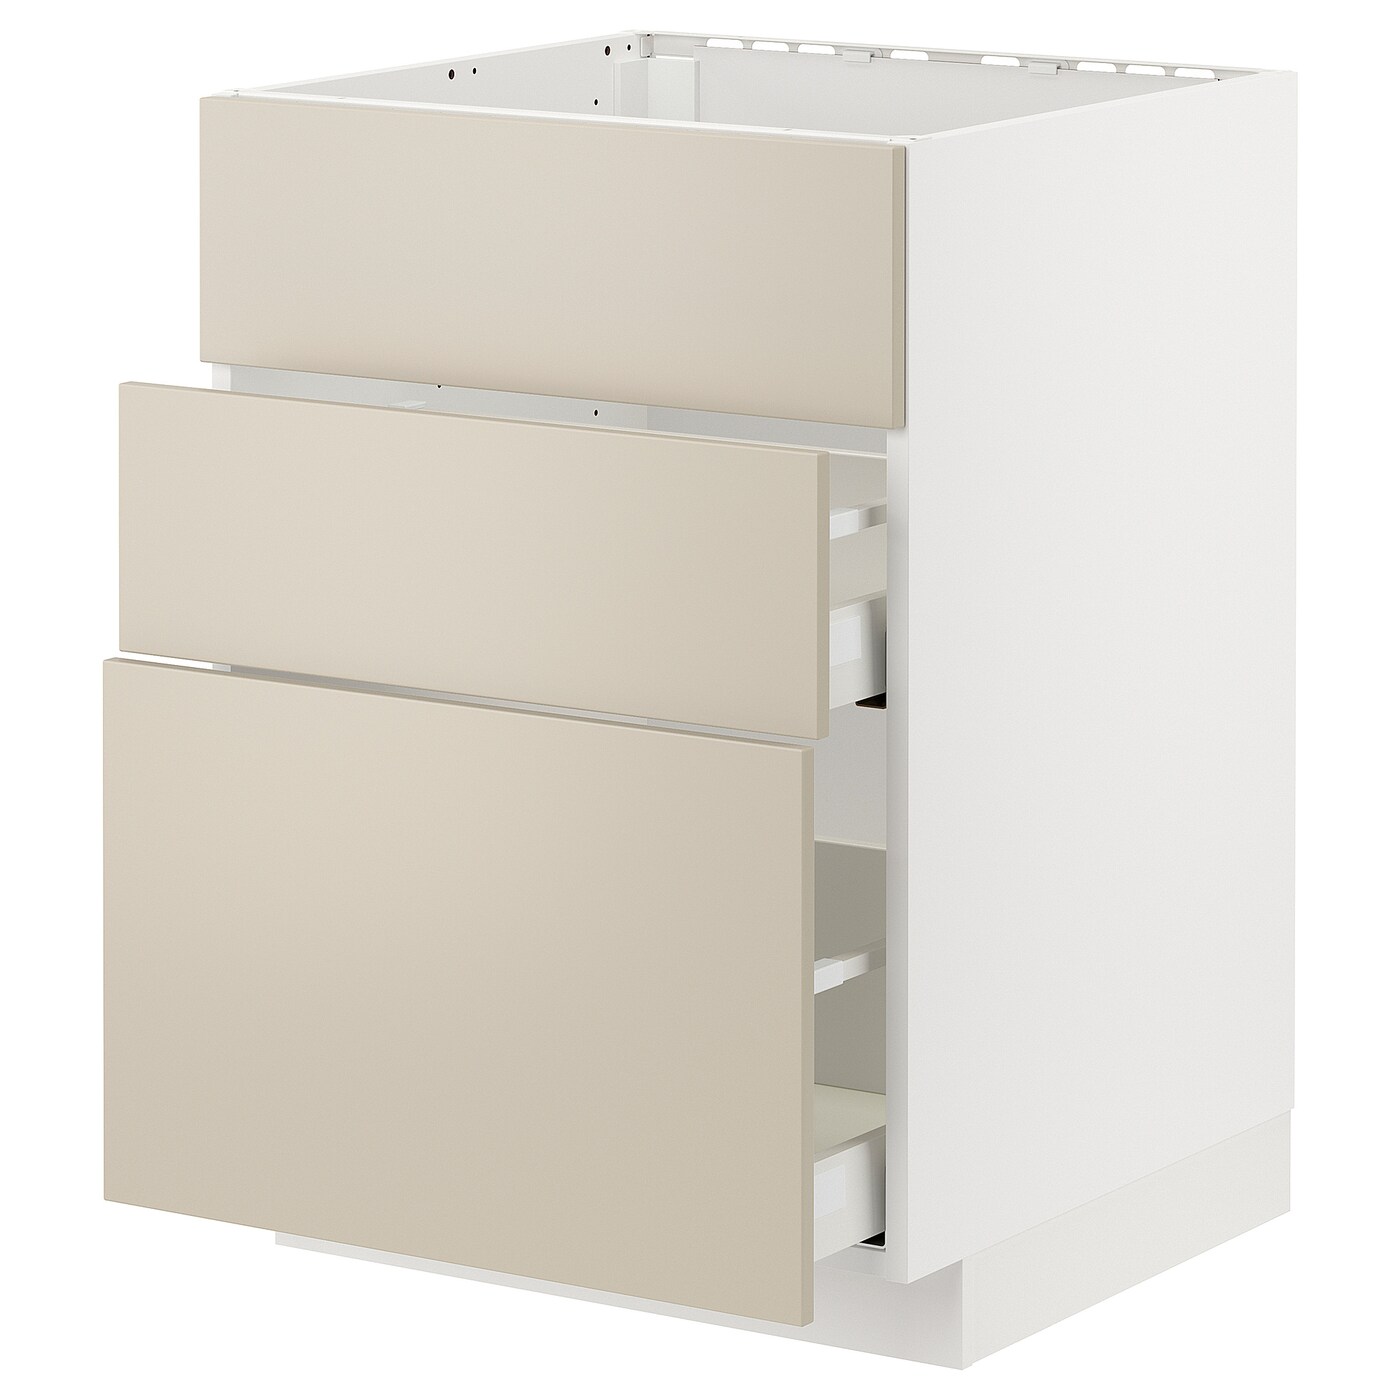 Напольный шкаф - IKEA METOD MAXIMERA, 62x80x60см, белый/бежевый, МЕТОД МАКСИМЕРА ИКЕА